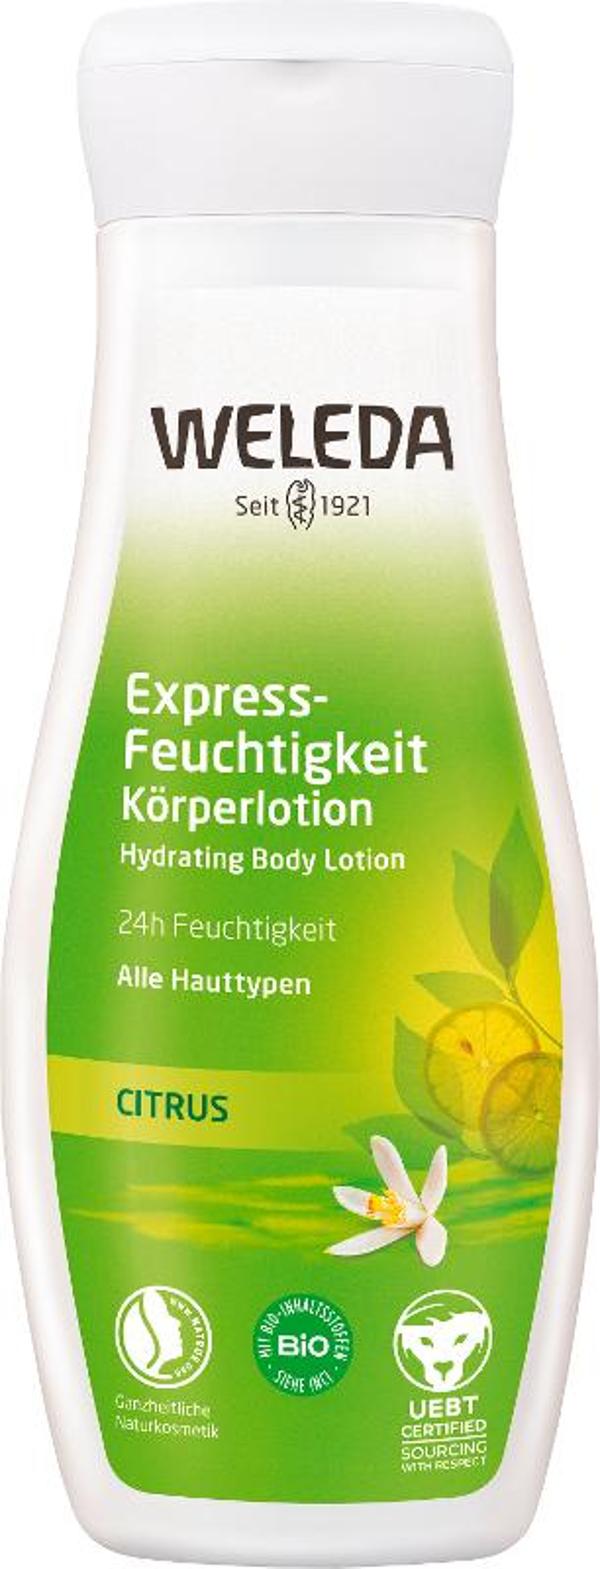 Produktfoto zu Citrus Express - Feuchtigkeit Körperlotion, 200 ml